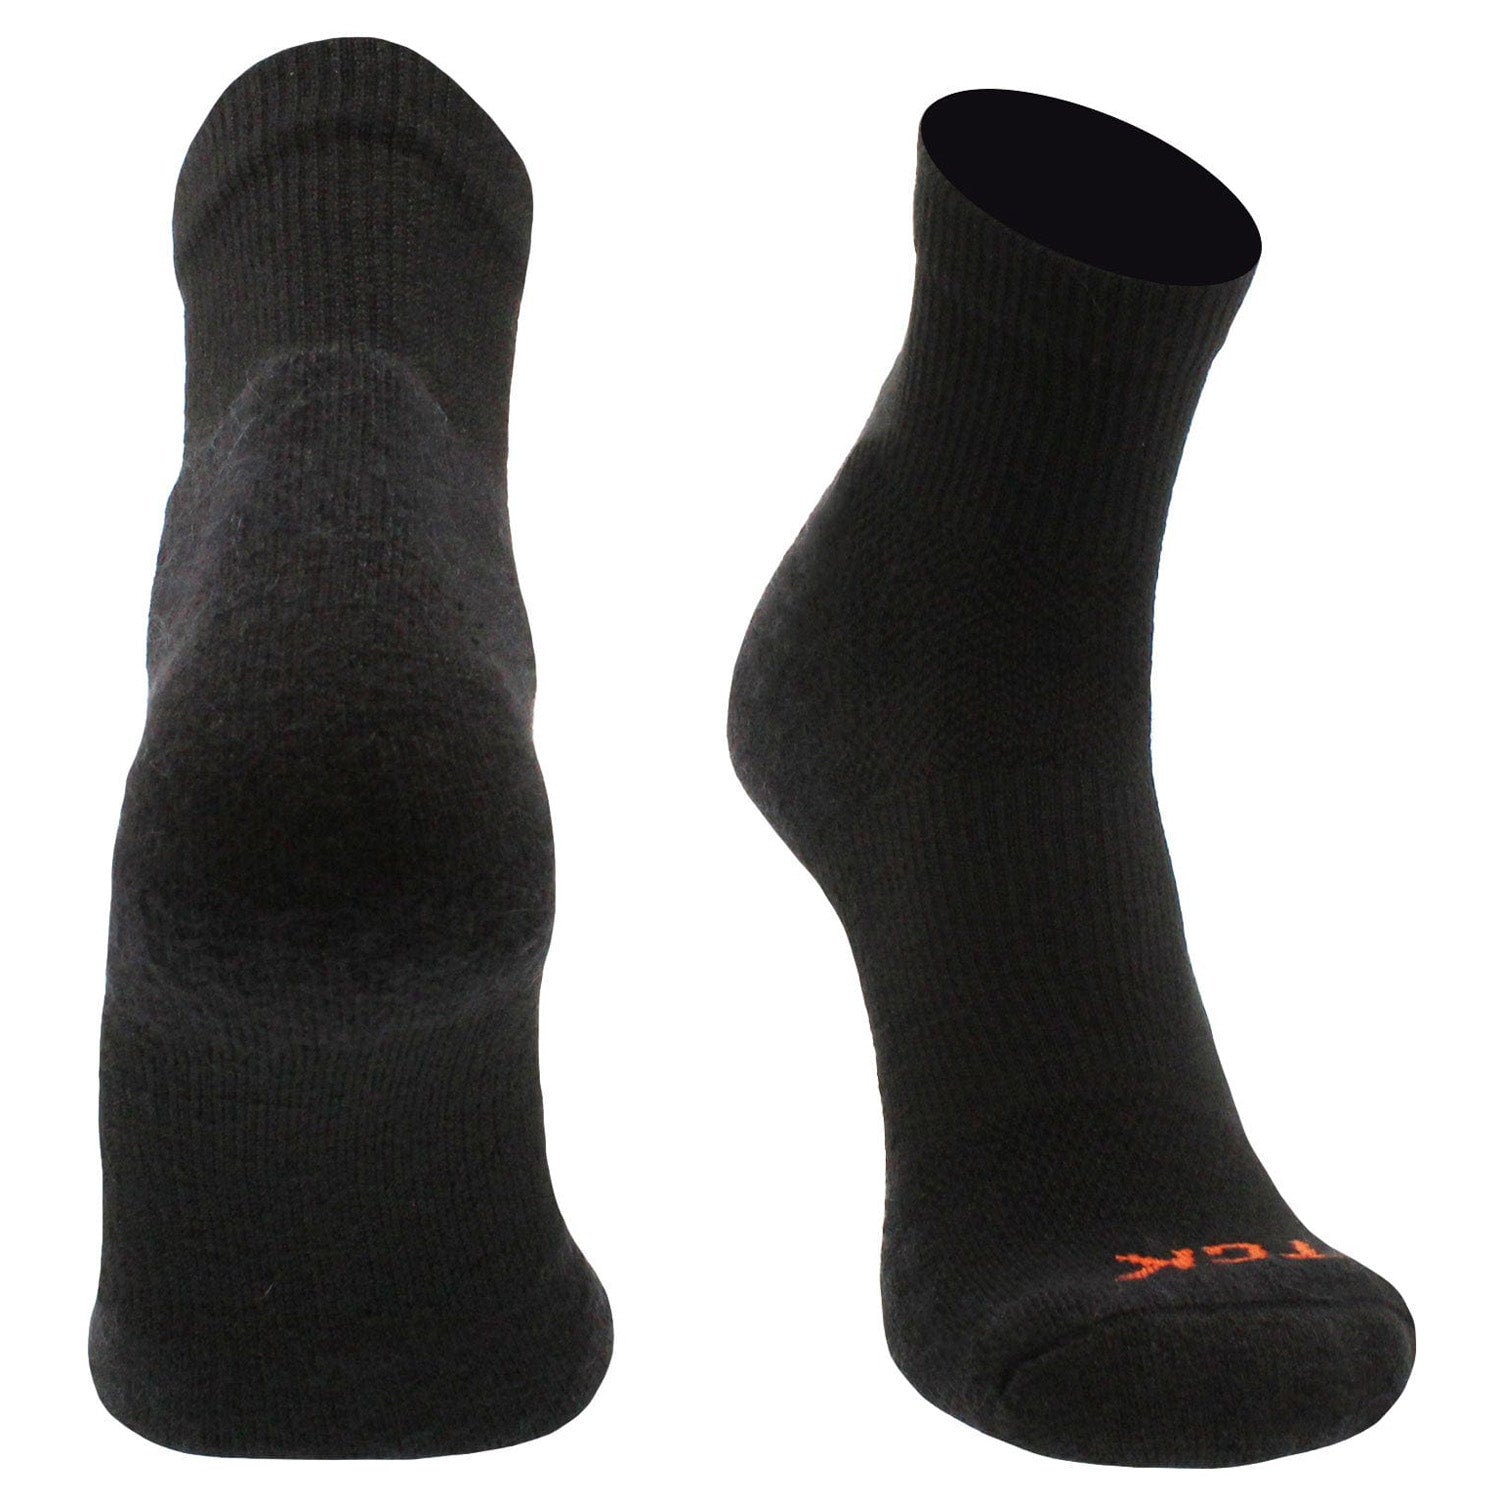 black quarter length pickleball socks